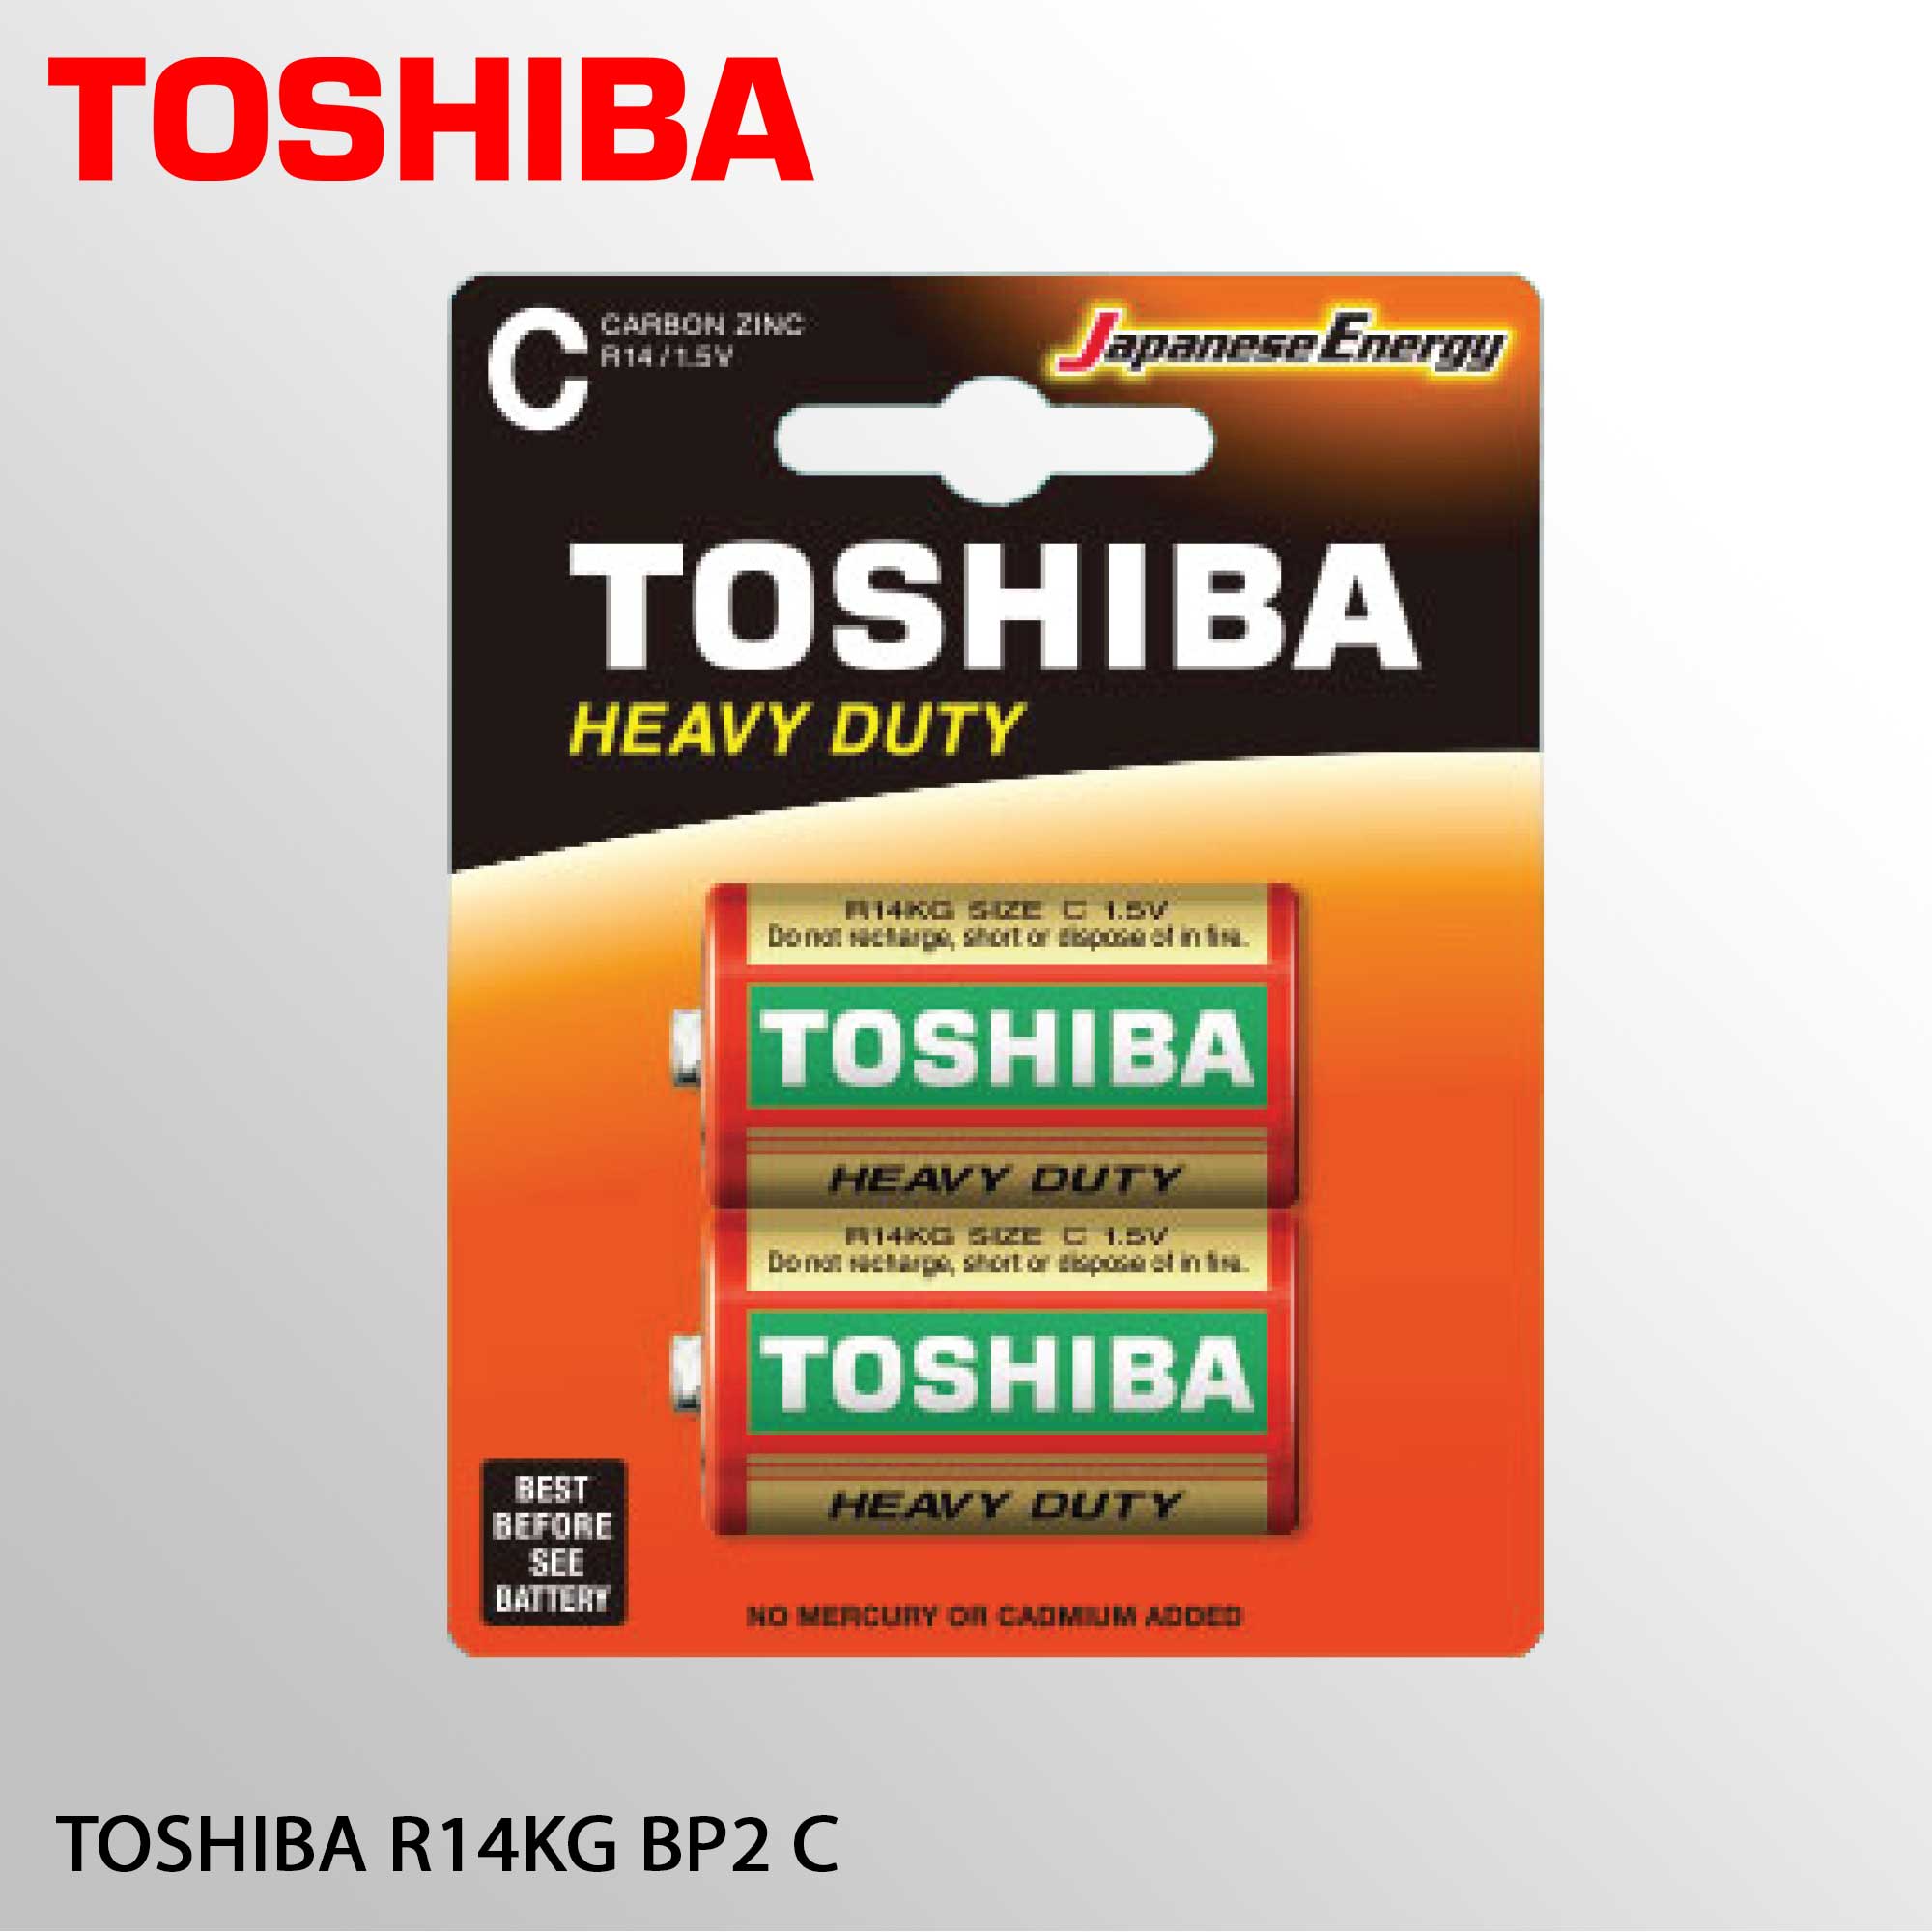 TOSHIBA R14KG BP2 C